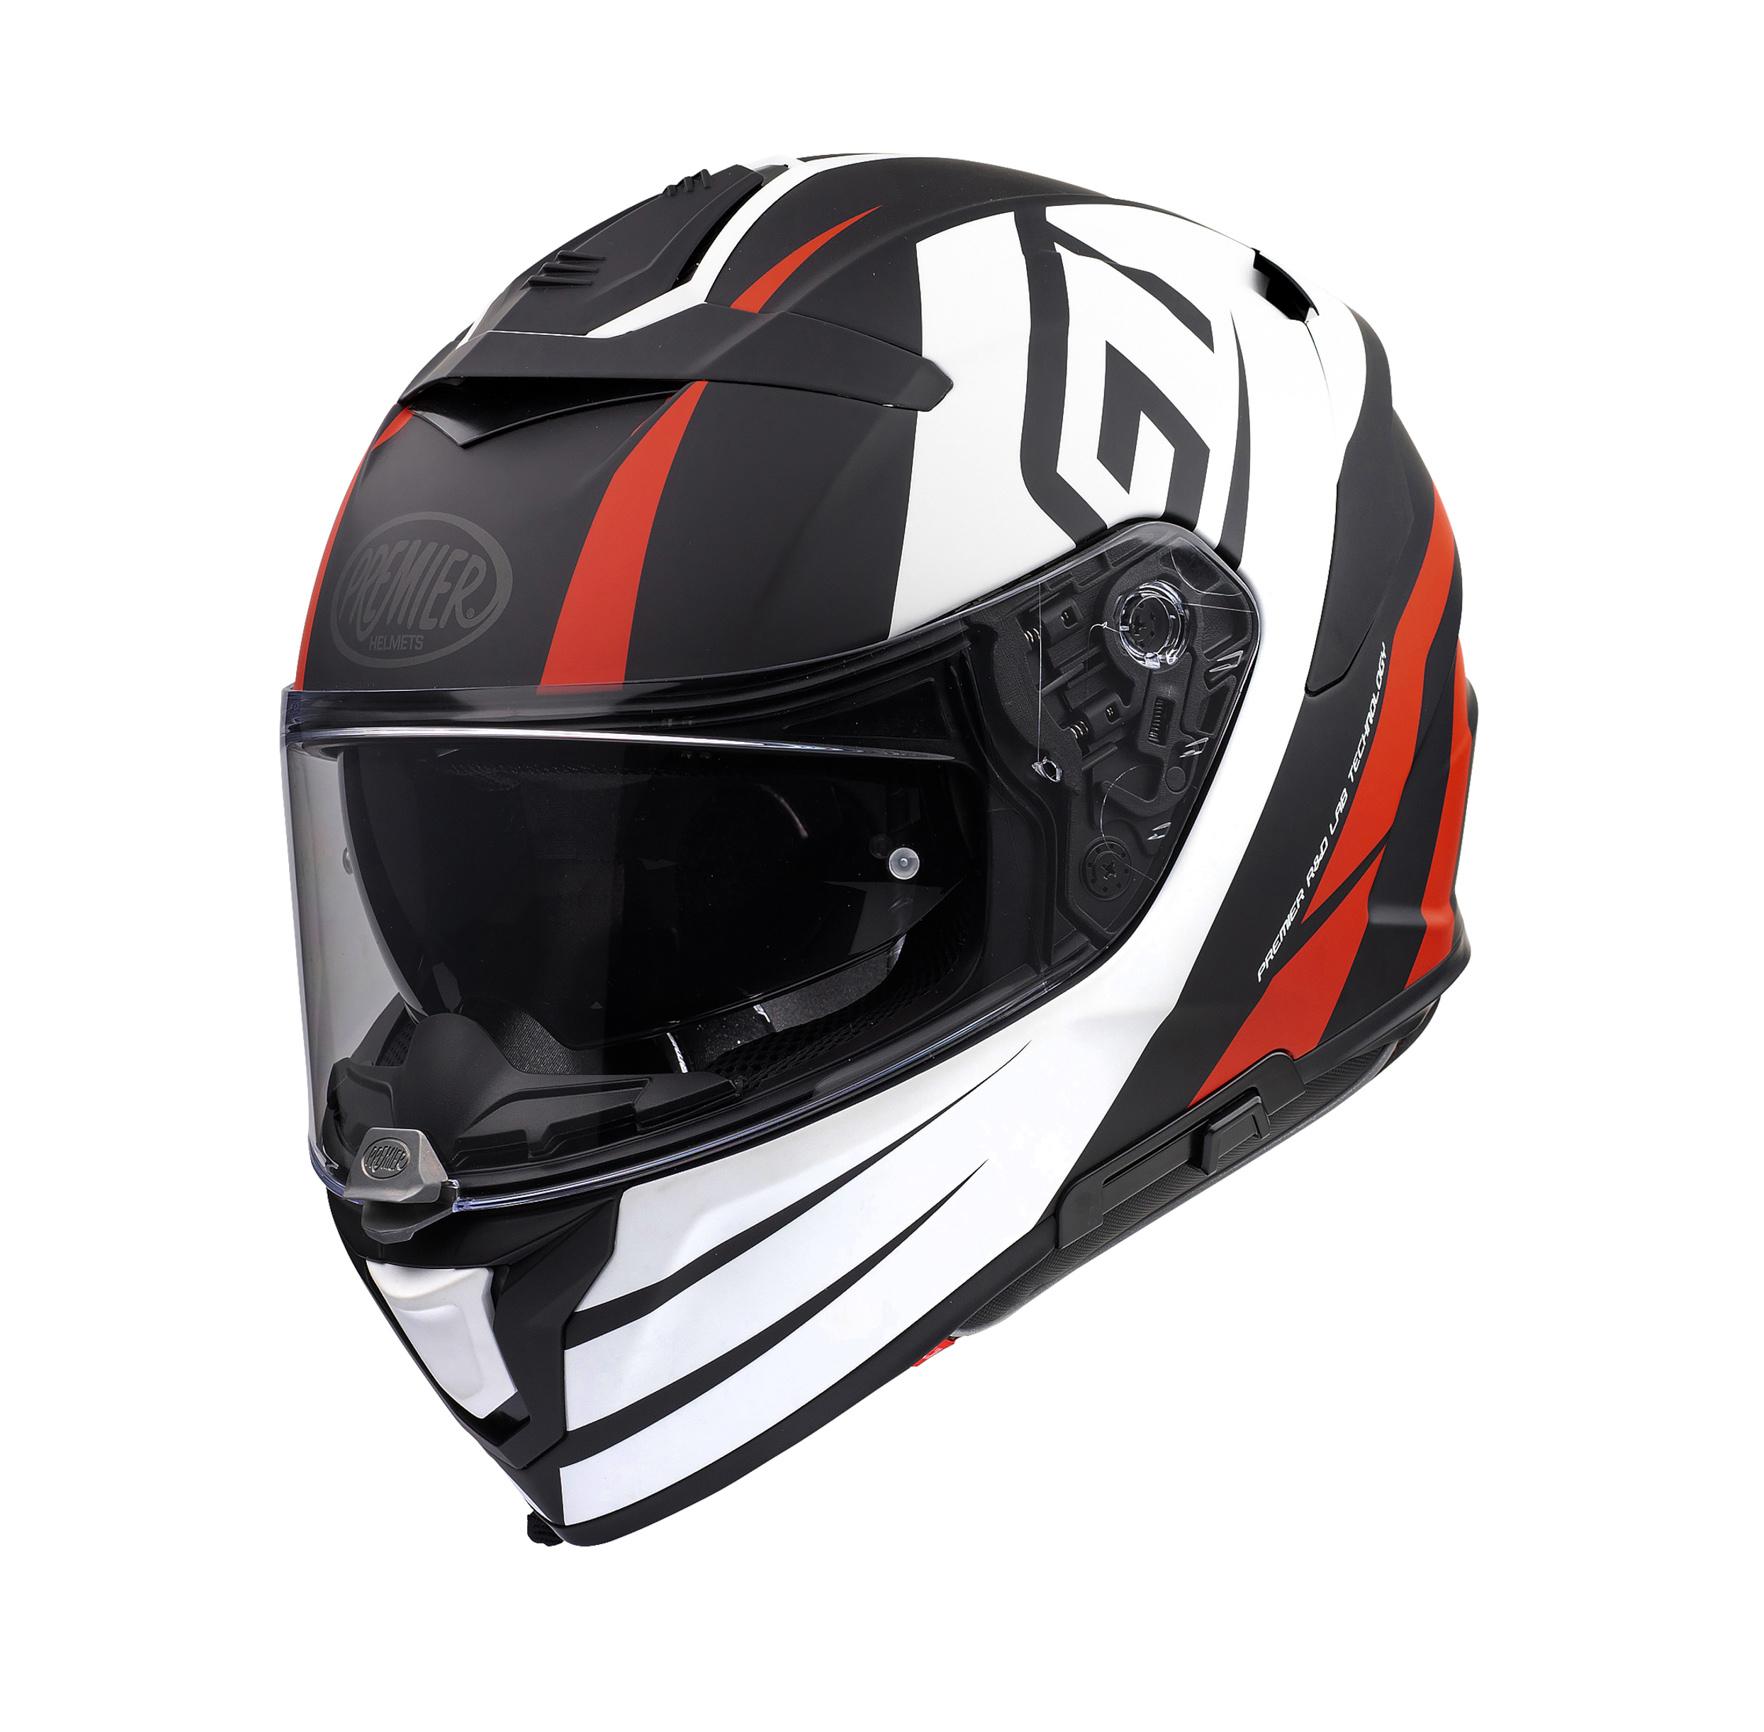 Premier Devil Gt Full Face Motorcycle Helmet - Black/White, L